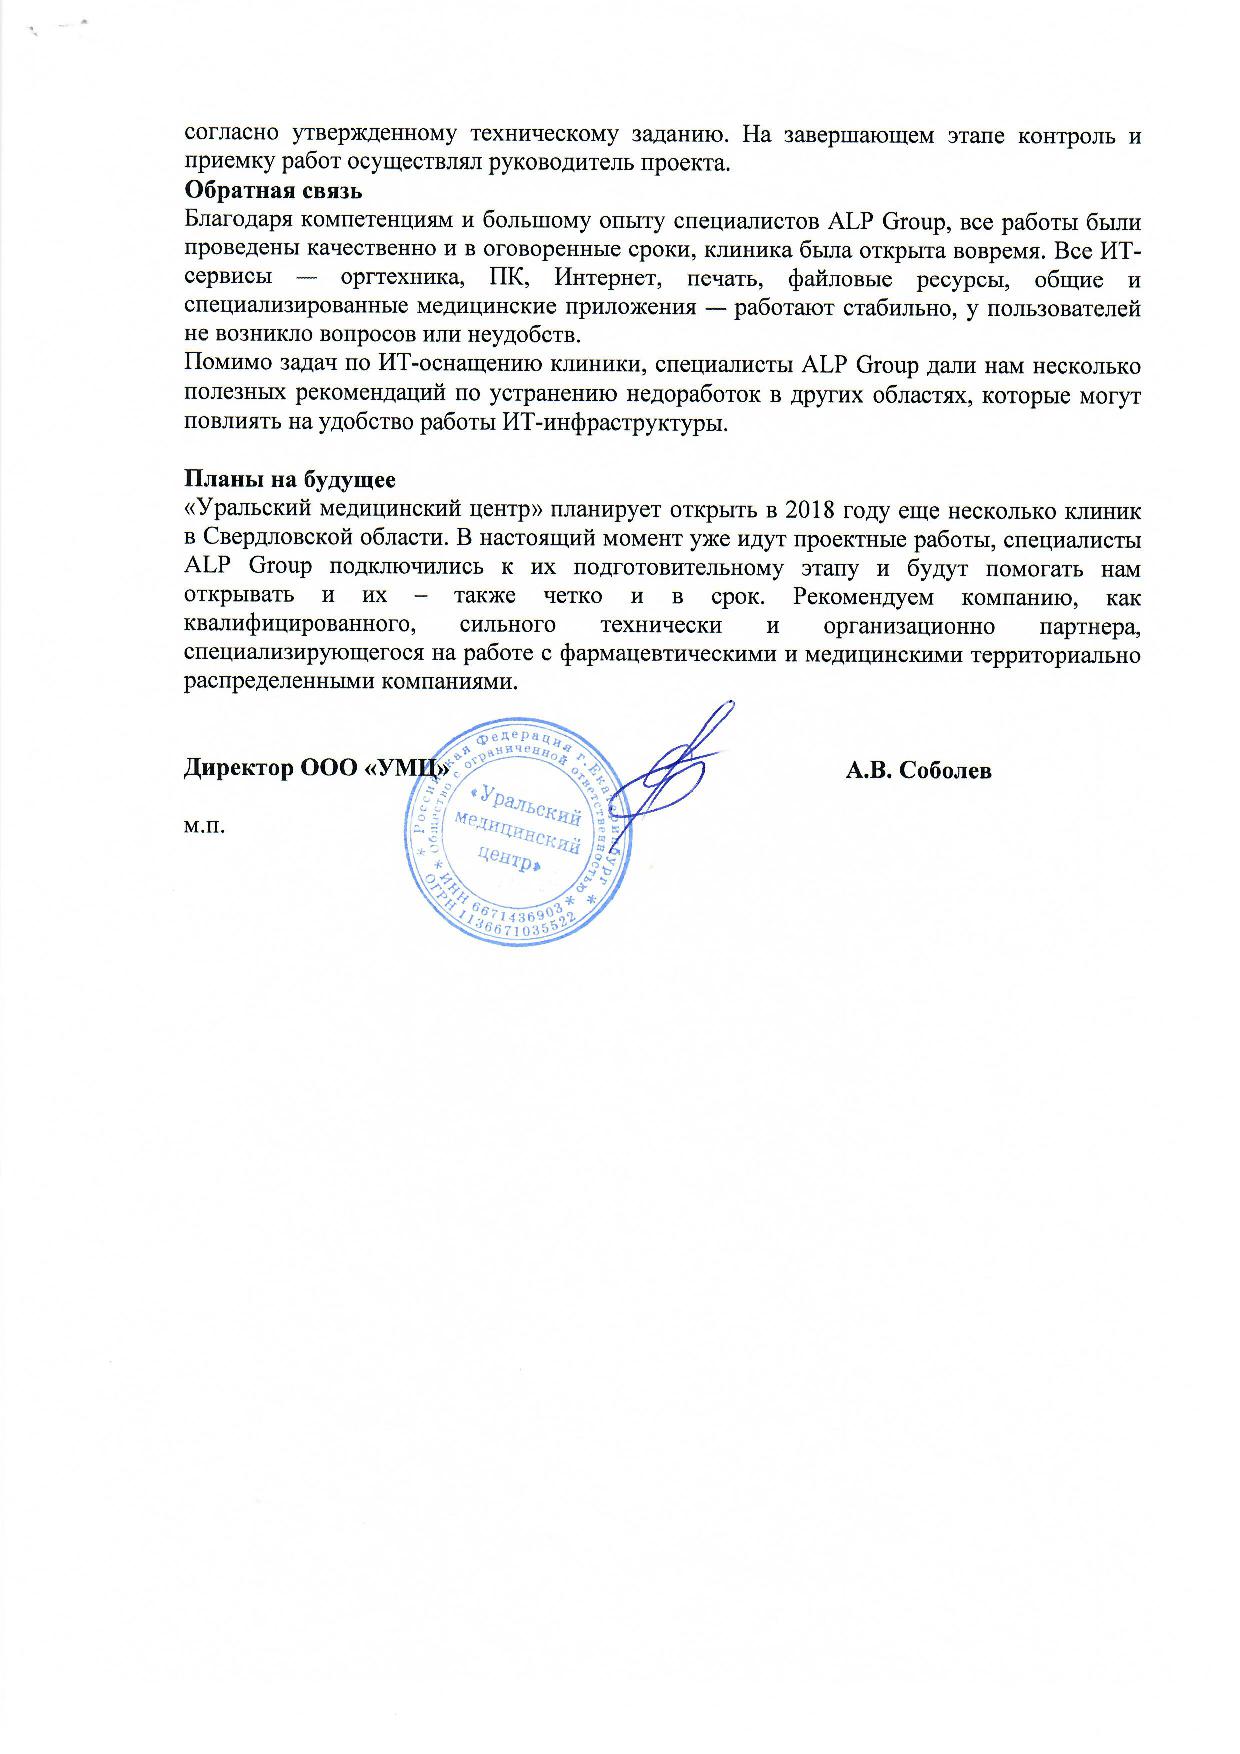 ИТ-оснащение новой клиники «Уральского медицинского центра» страница 2